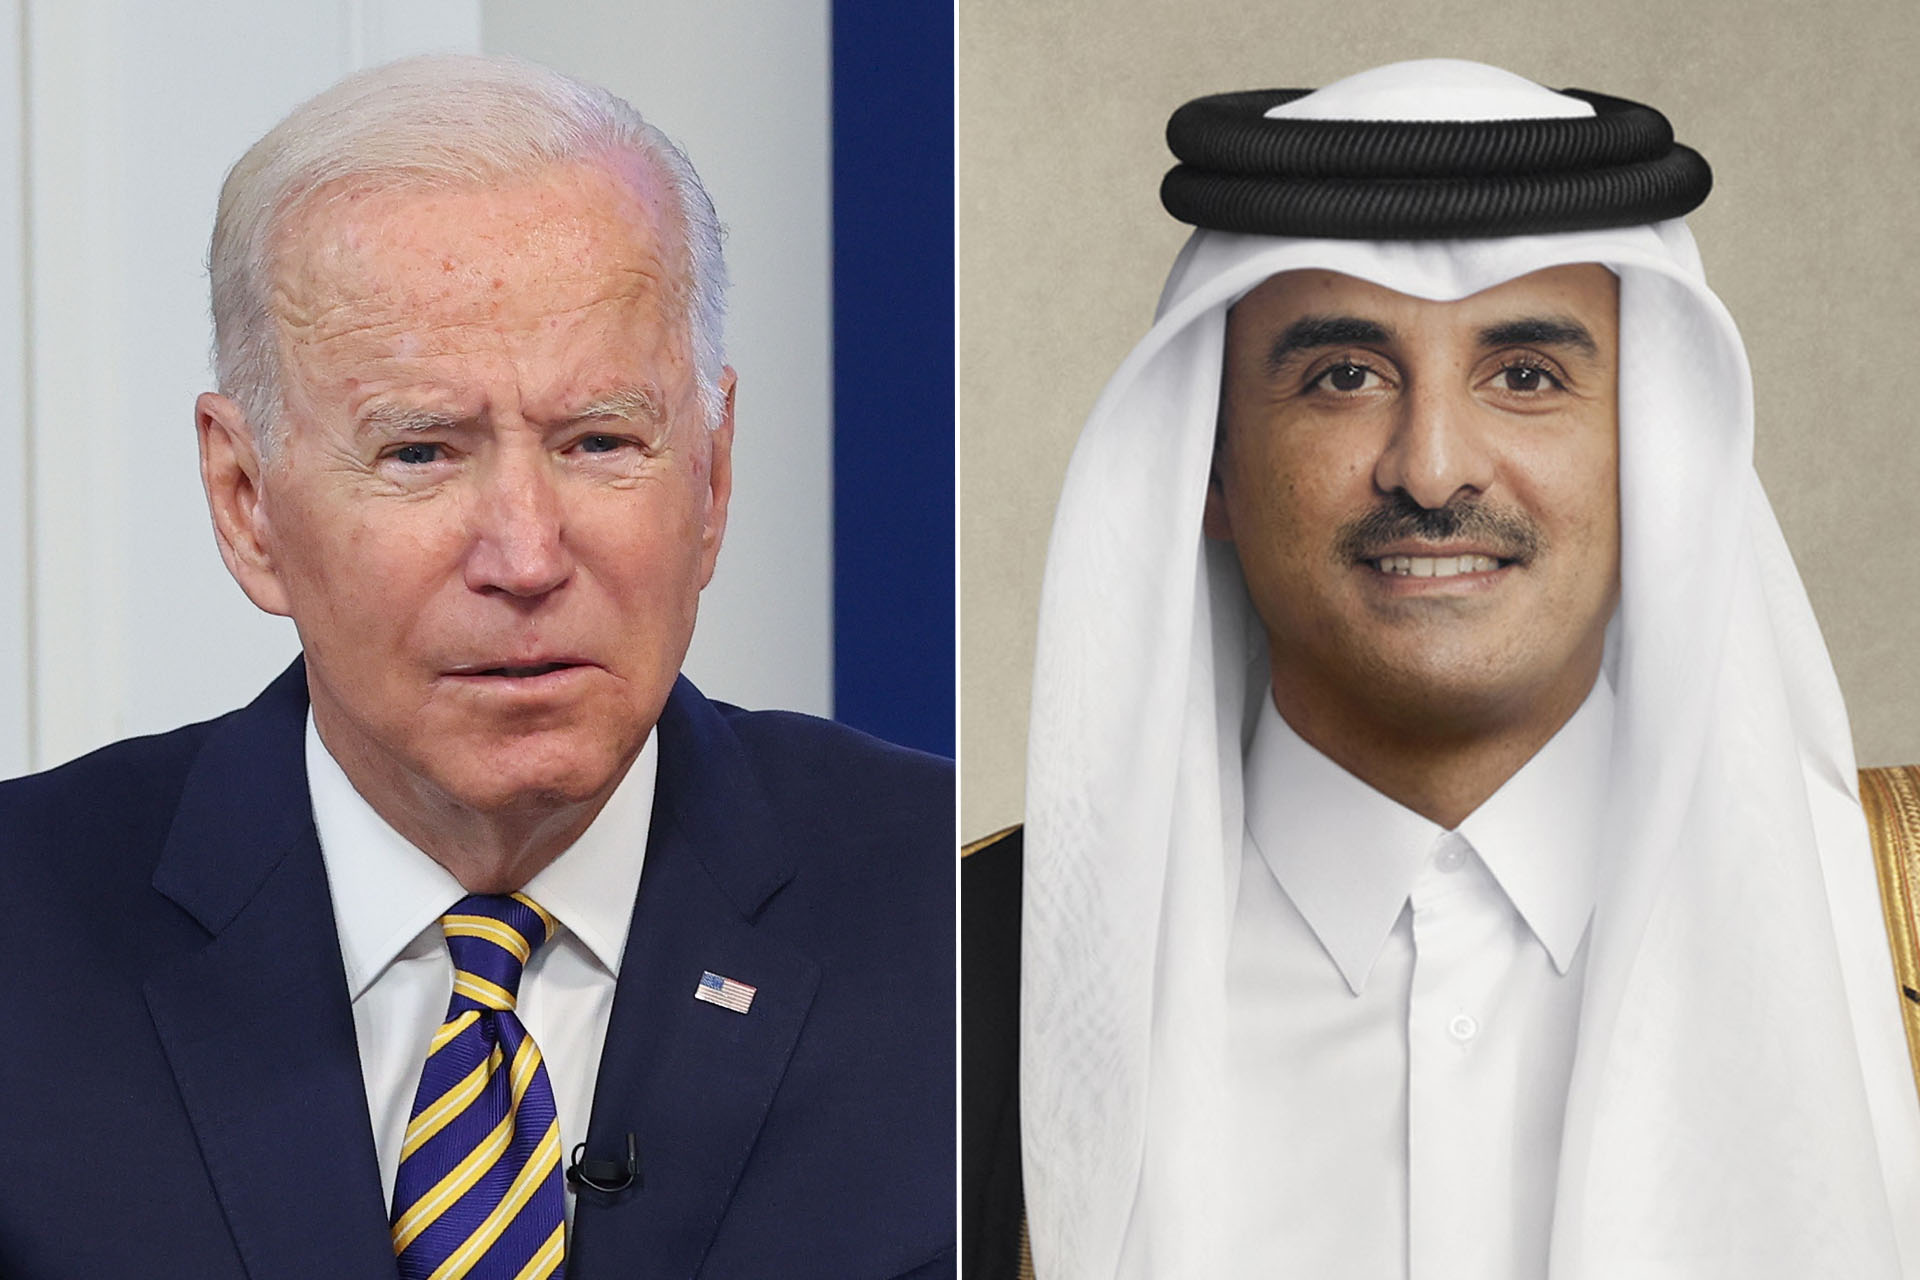 جهود الوساطة تتمم المرحلة الثانية لاتفاق الأسرى وبايدن يشكر أمير قطر | أخبار – البوكس نيوز